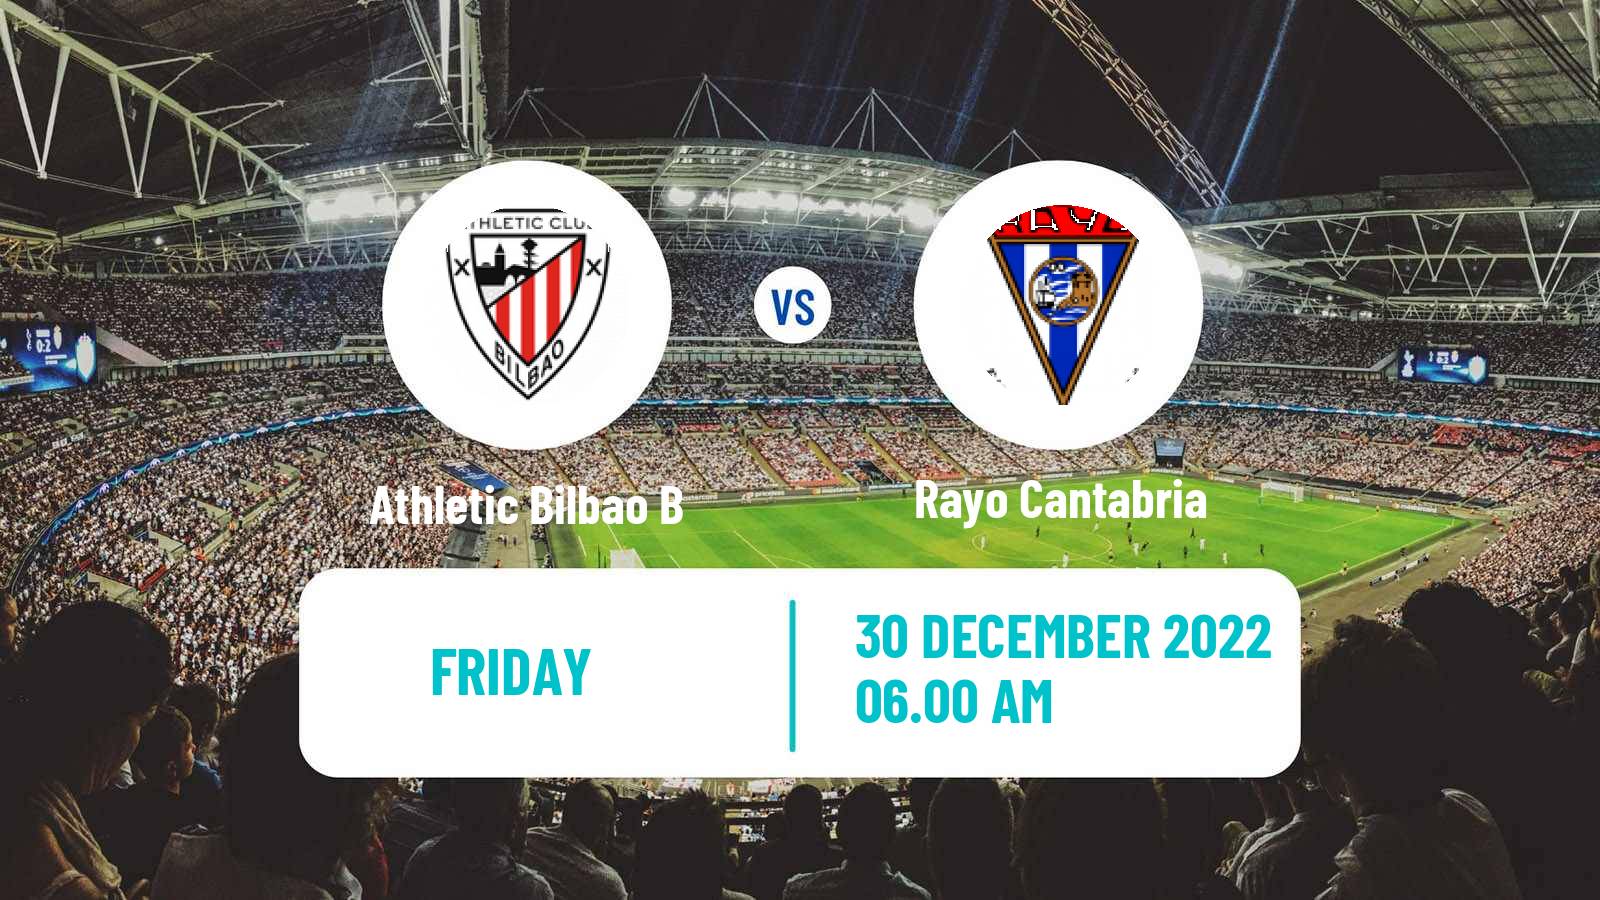 Soccer Club Friendly Athletic Bilbao B - Rayo Cantabria